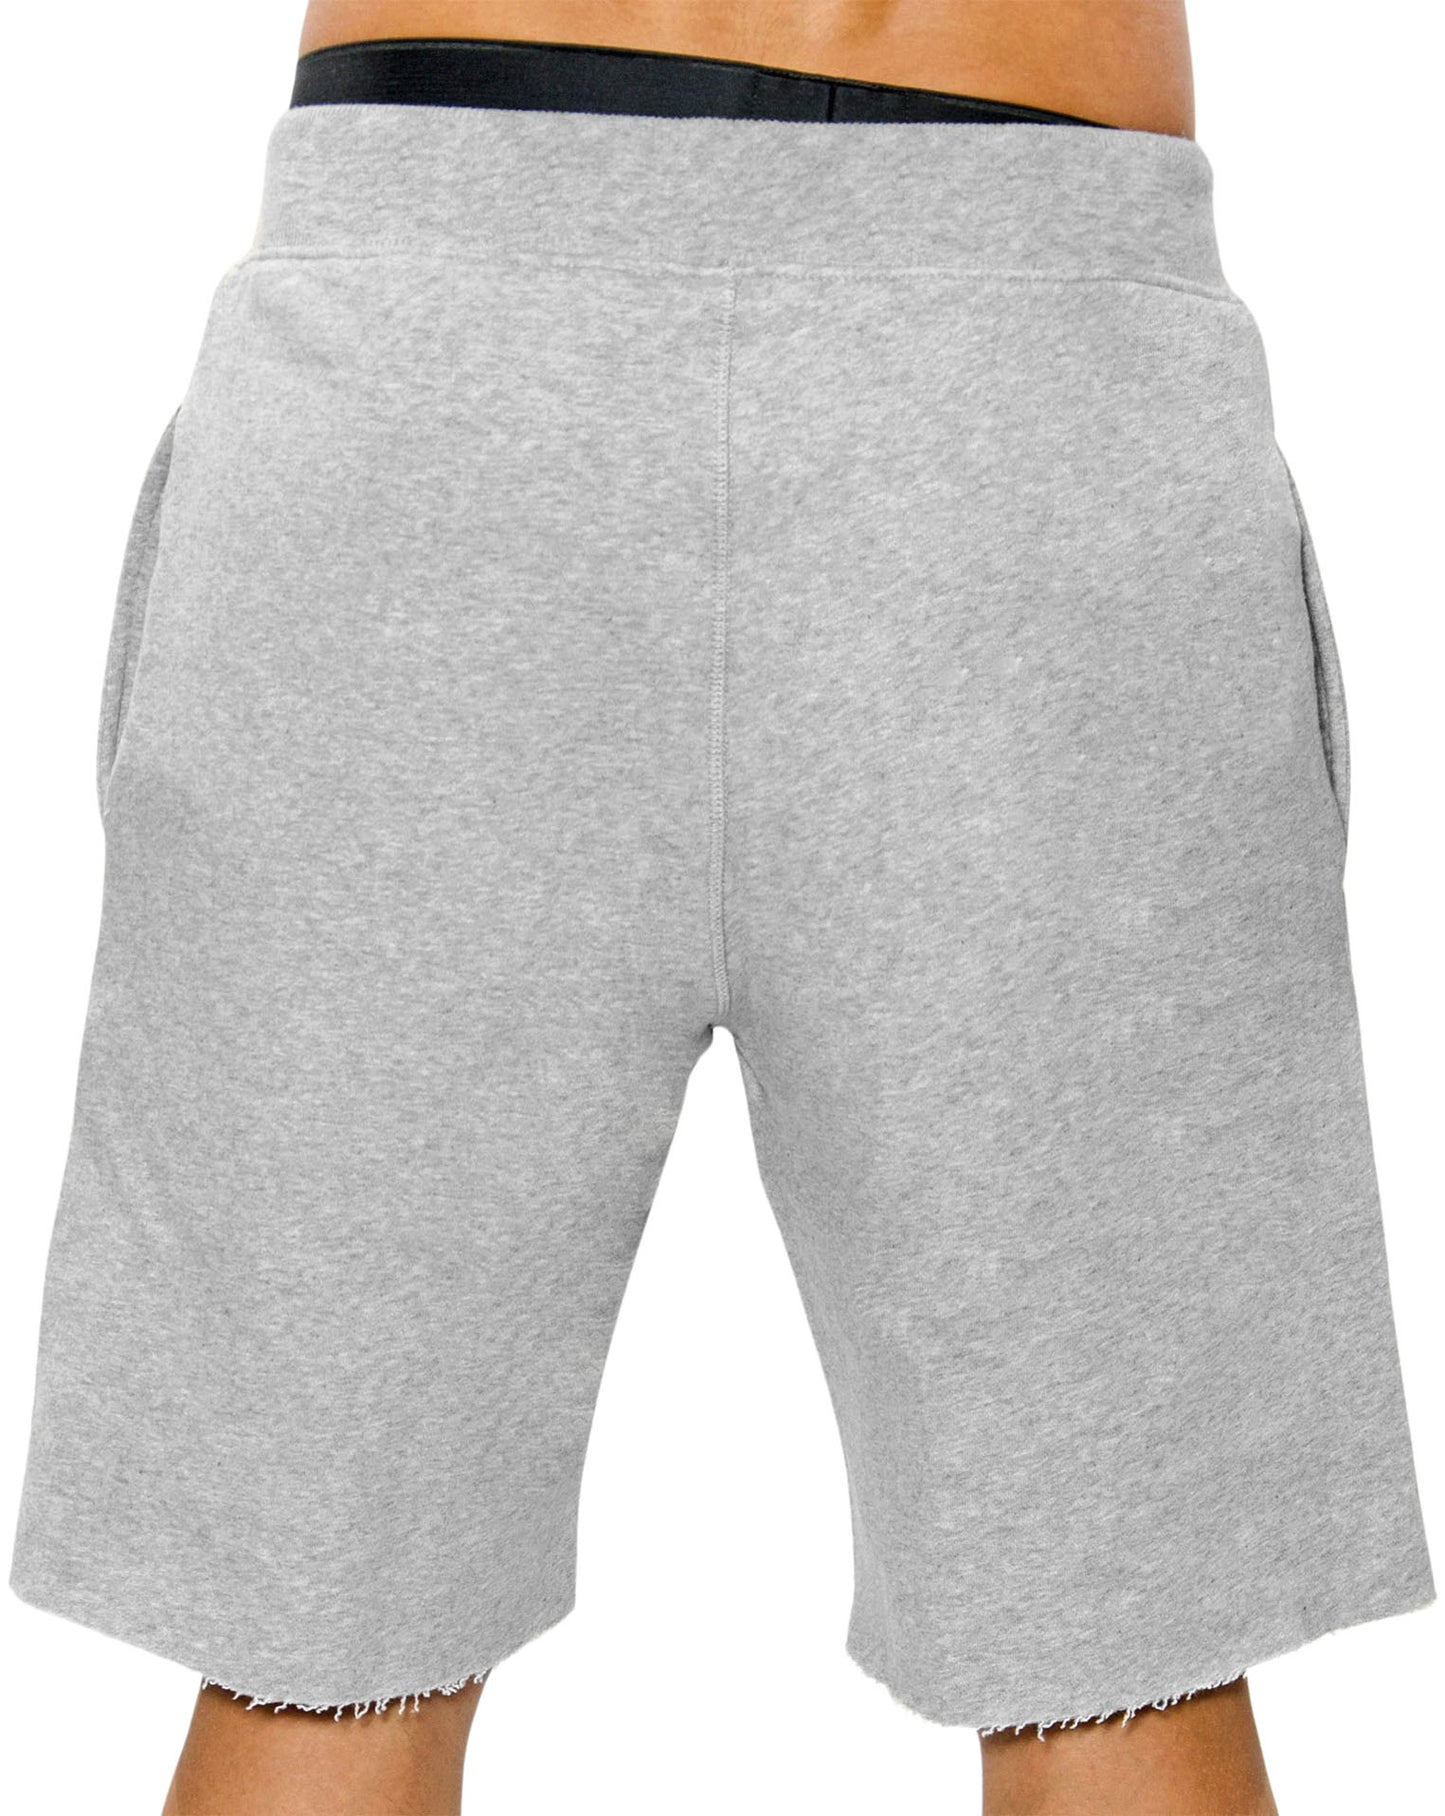 Modische und funktionale graue Herren Sporthosen von Gym Generation, ideal für Fitness-Workouts und lässige Alltagslooks.